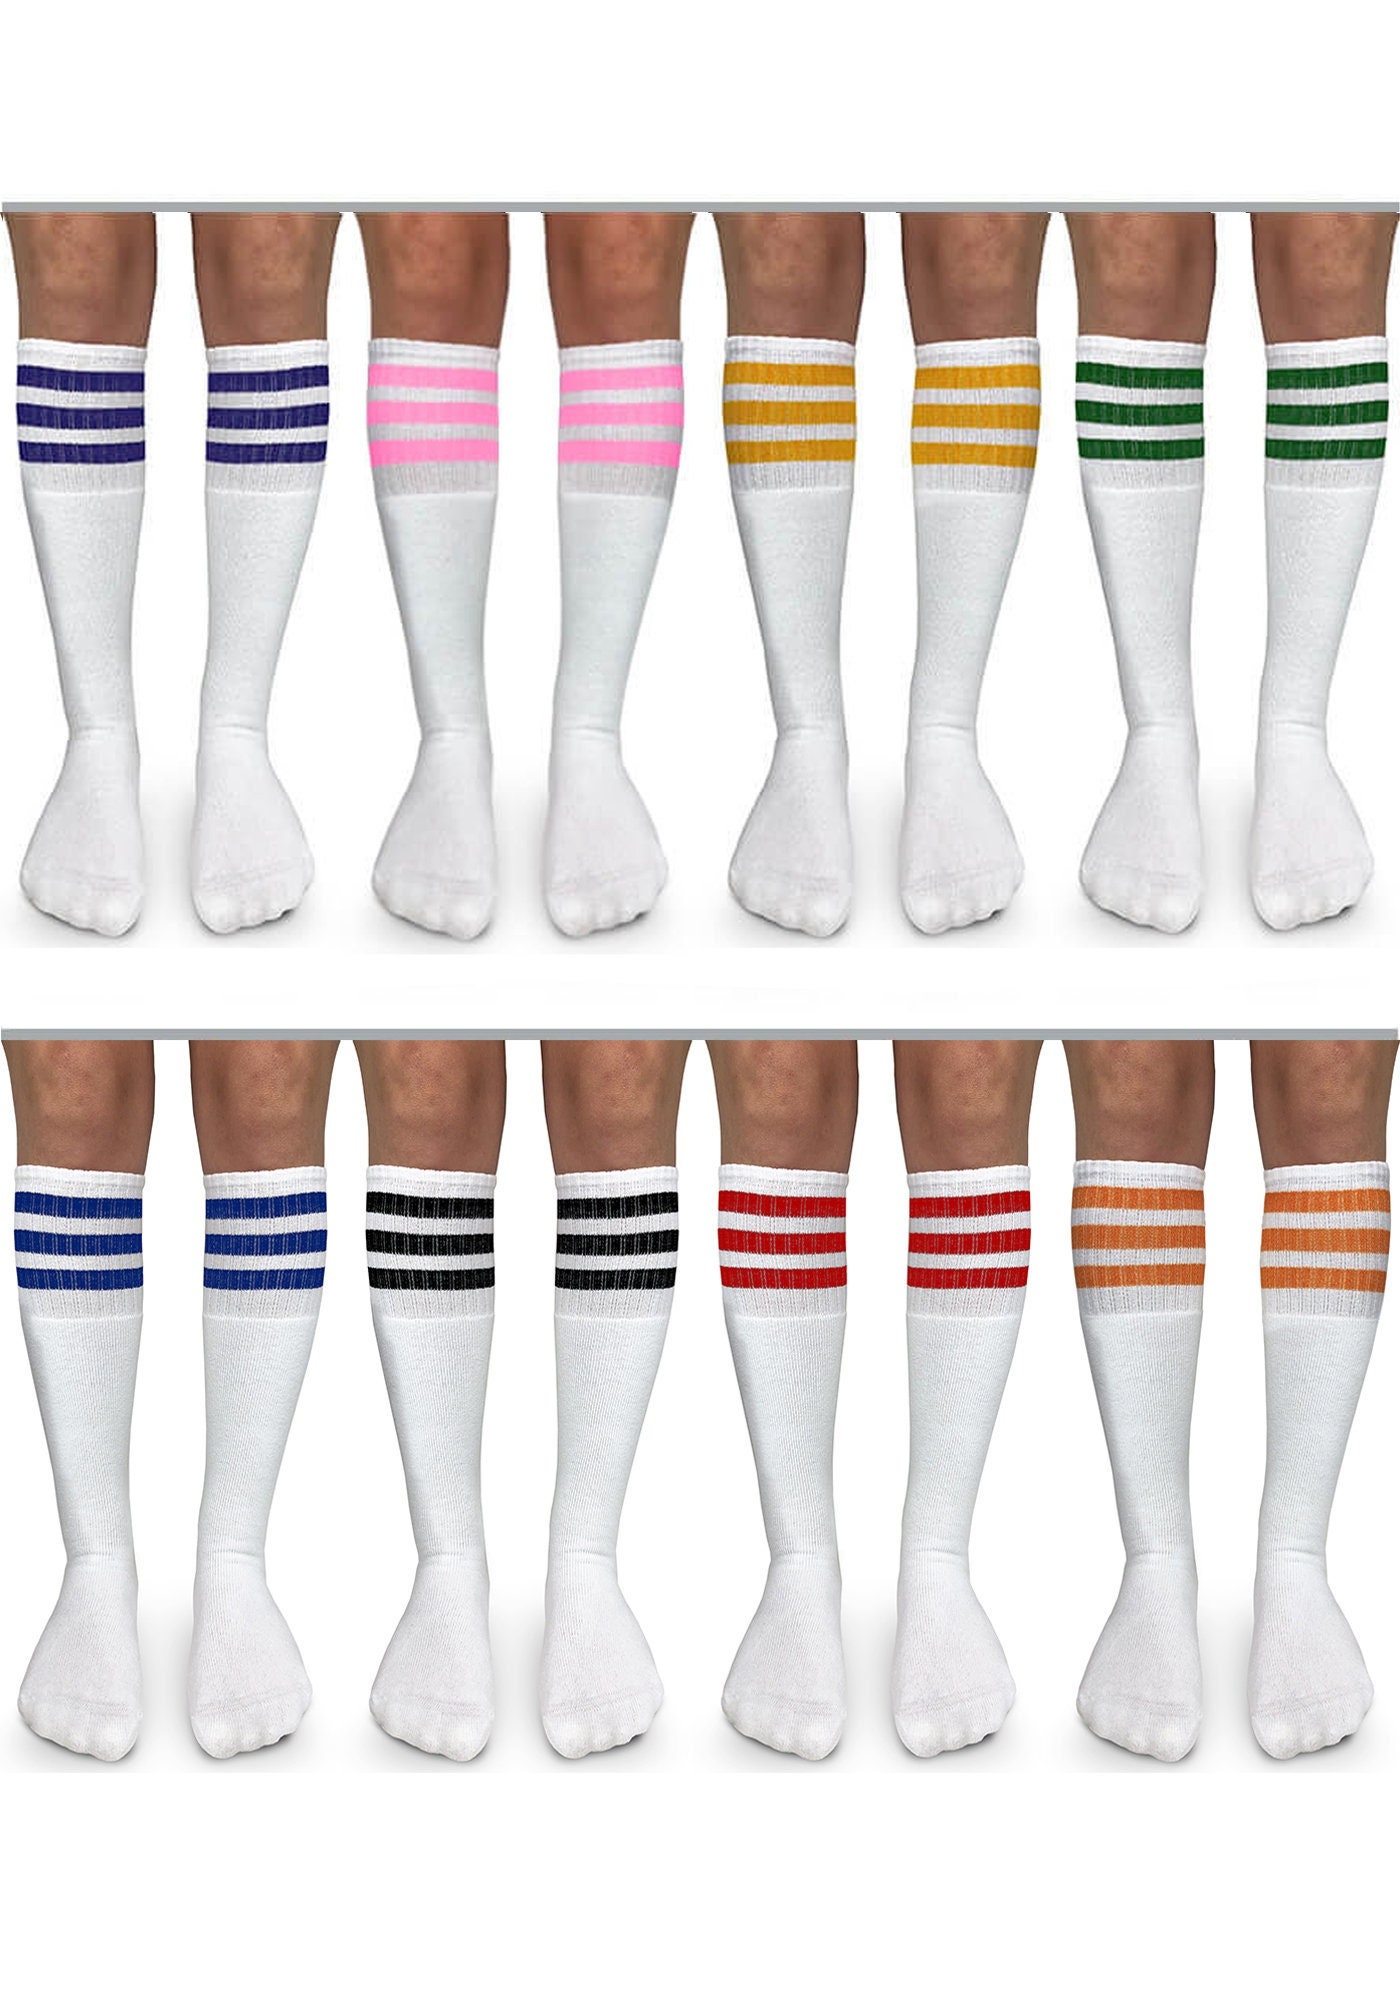 Vintage Stripe Socks -  Canada